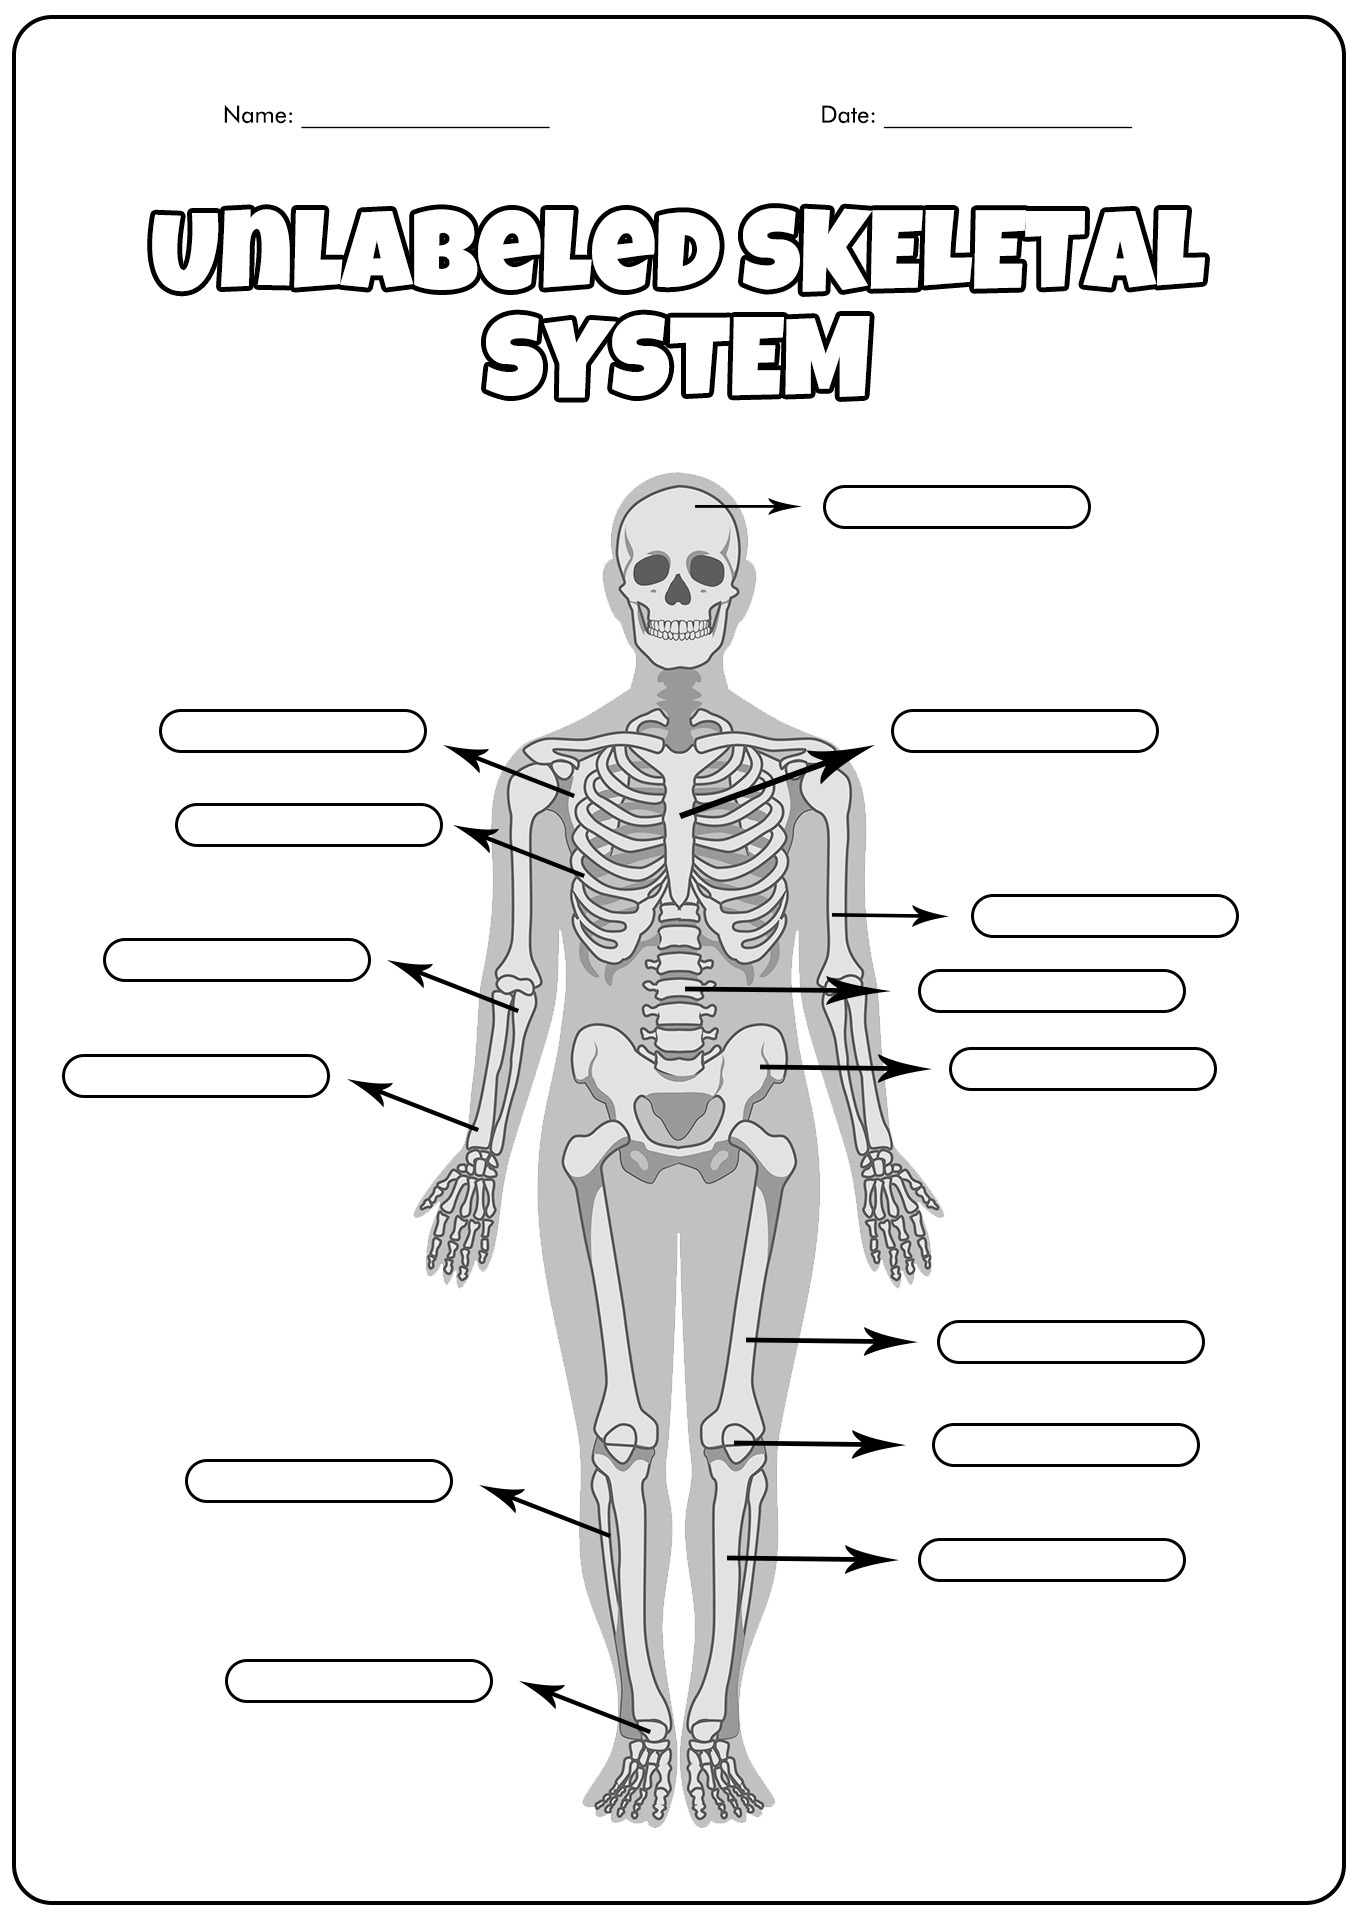 Unlabeled Skeletal System